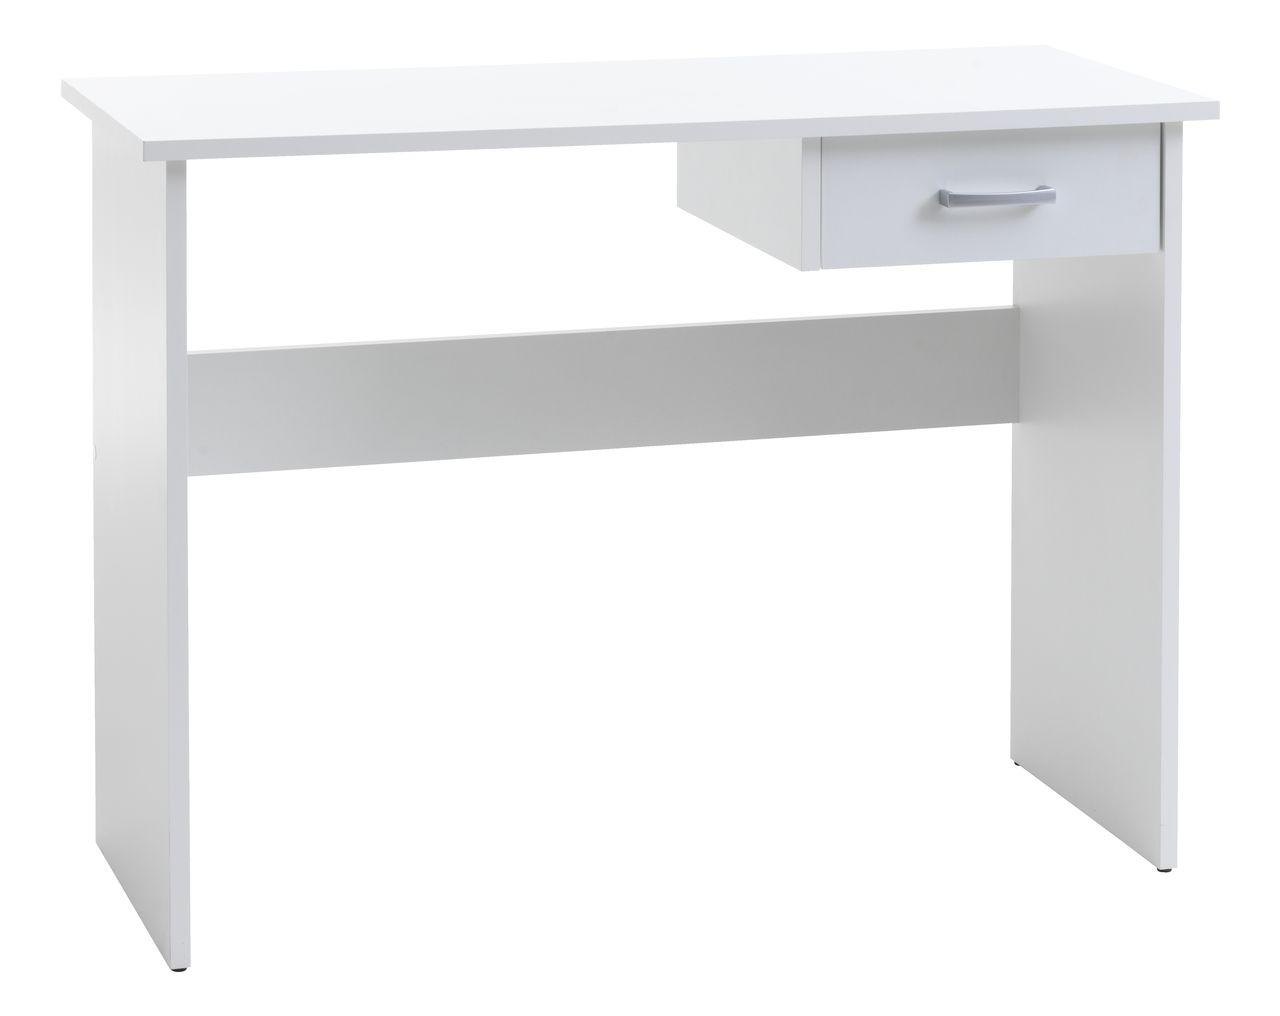 Стол высотой 100 см. Письменный стол TAMHOLT. JYSK стол письменный. Письменный стол 110см белый с ящиками 110. Письменный стол TAMHOLT белый/дуб.